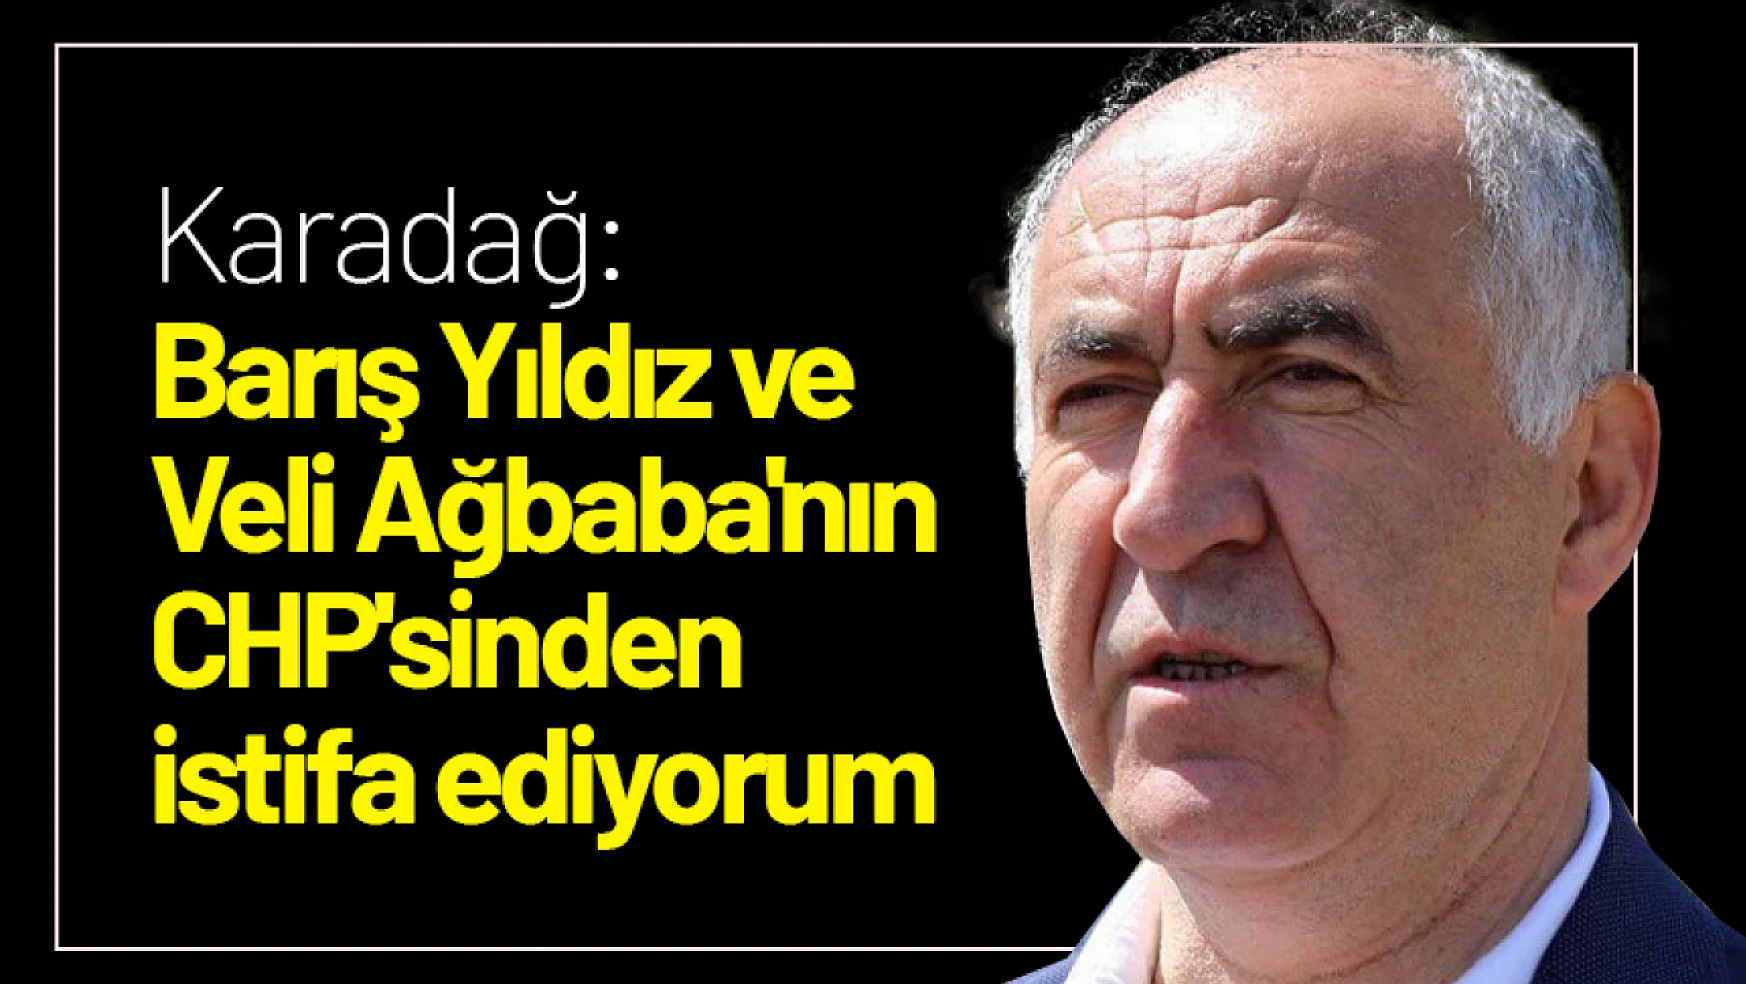 Karadağ: Barış Yıldız ve Veli Ağbaba'nın CHP'sinden istifa ediyorum